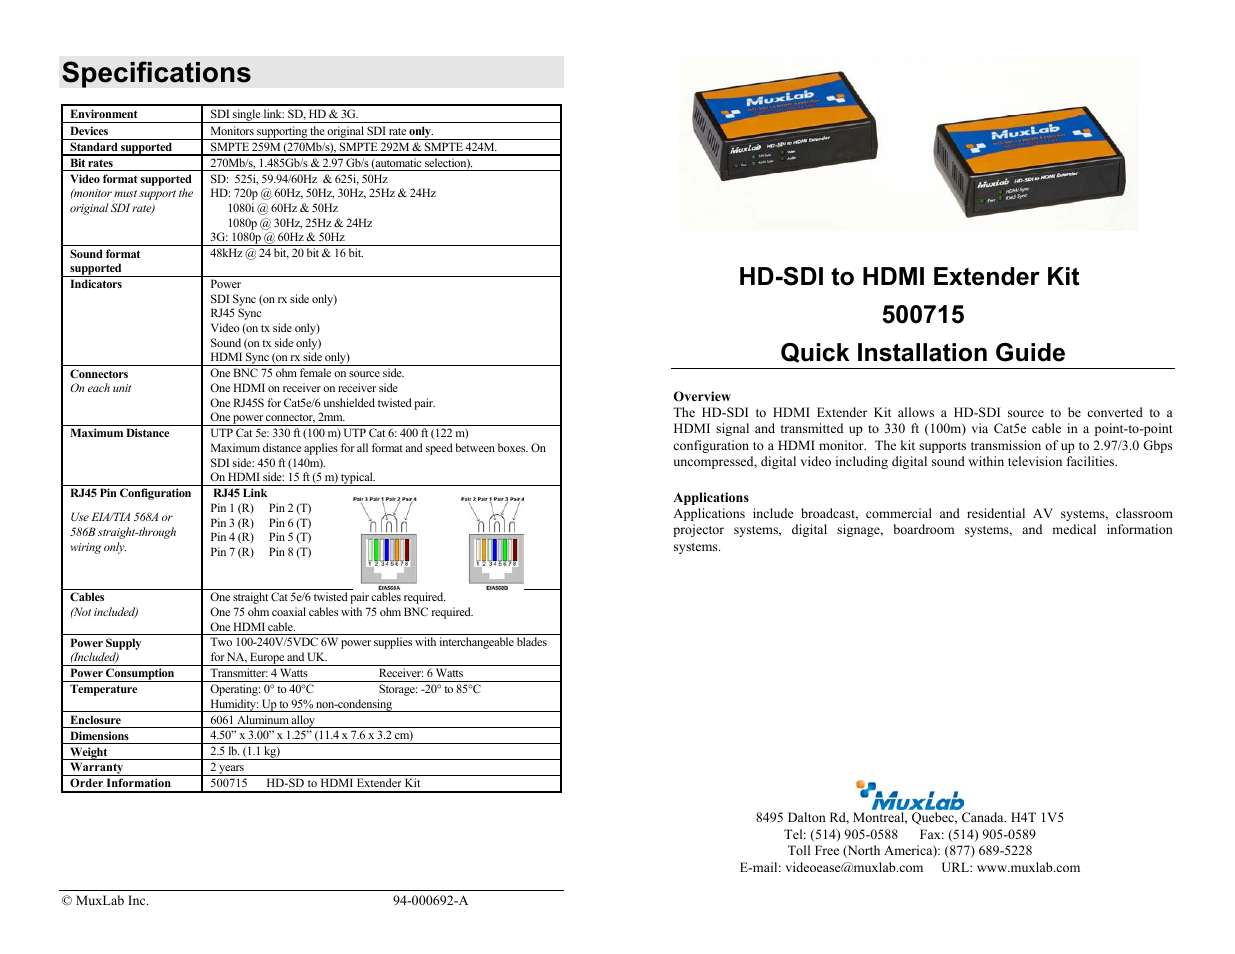 3G-SDI to HDMI Extender Kit